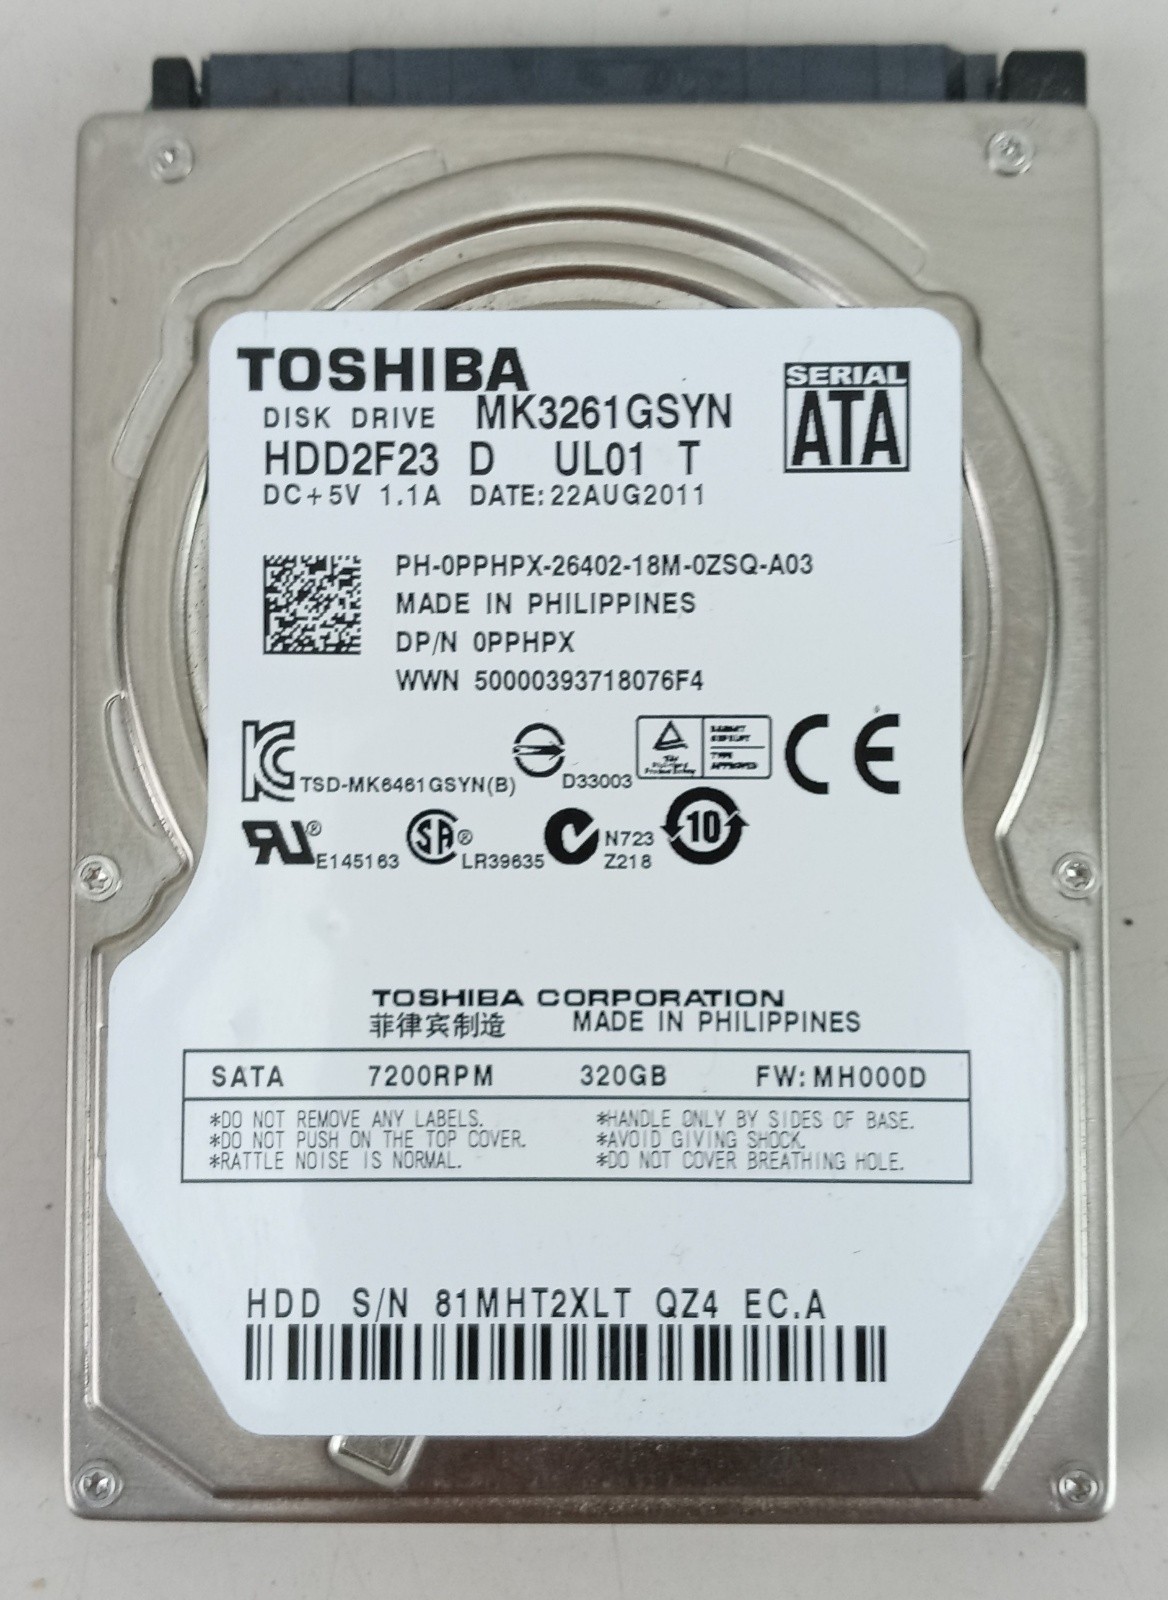 Toshiba MK3261GSYN 320GB 7200RPM SATA 2.5" Laptop Hard Drive